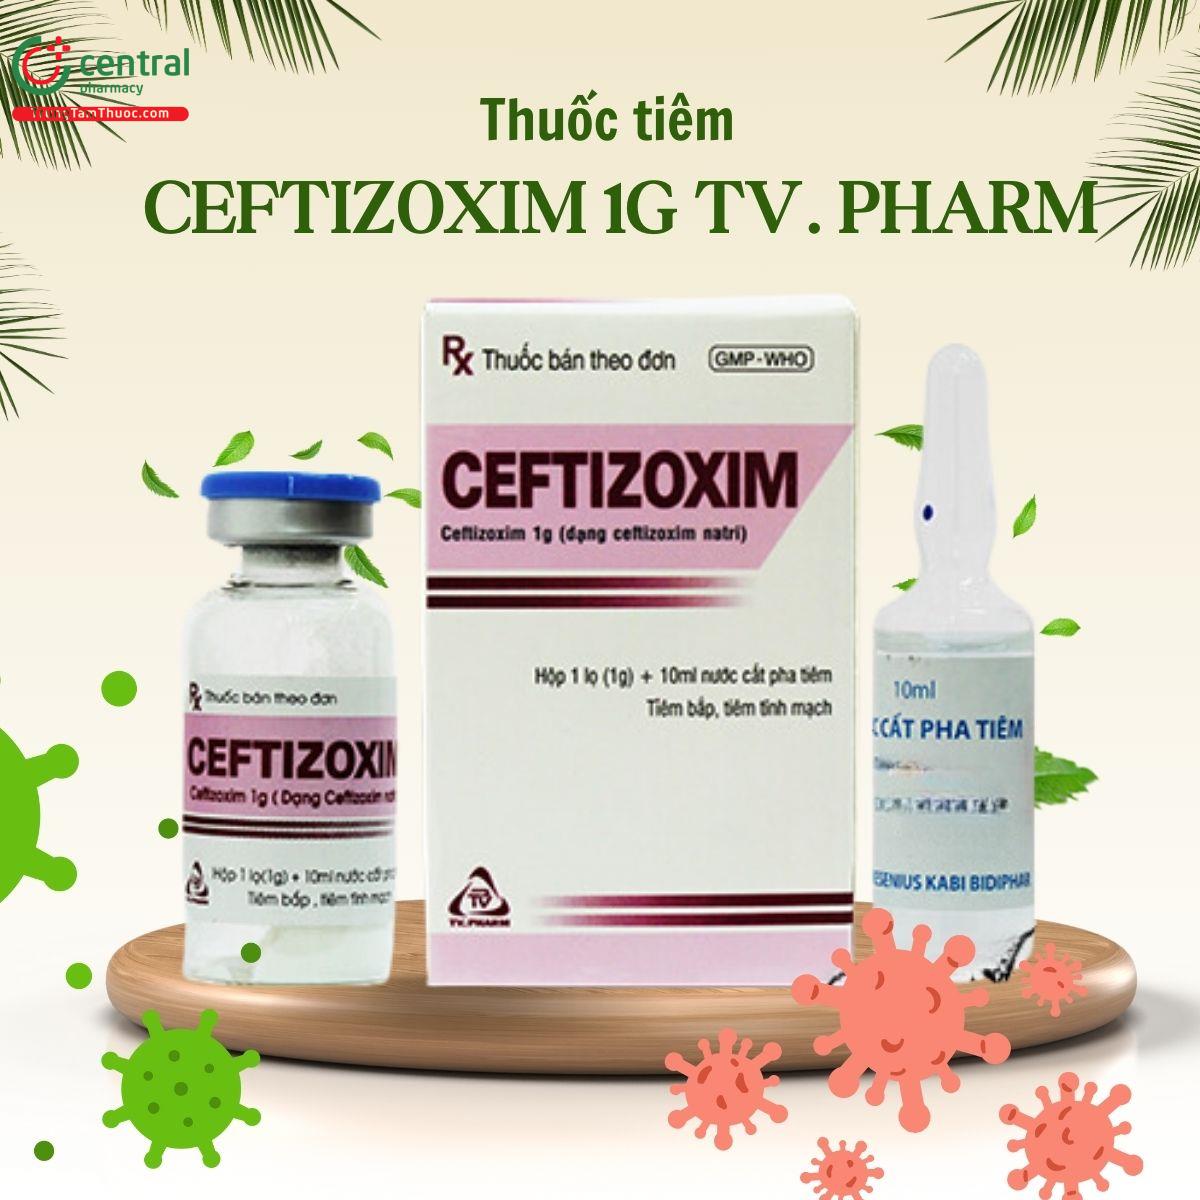  Thuốc tiêm Ceftizoxim 1g TV. Pharm trị nhiễm khuẩn hô hấp, xương khớp